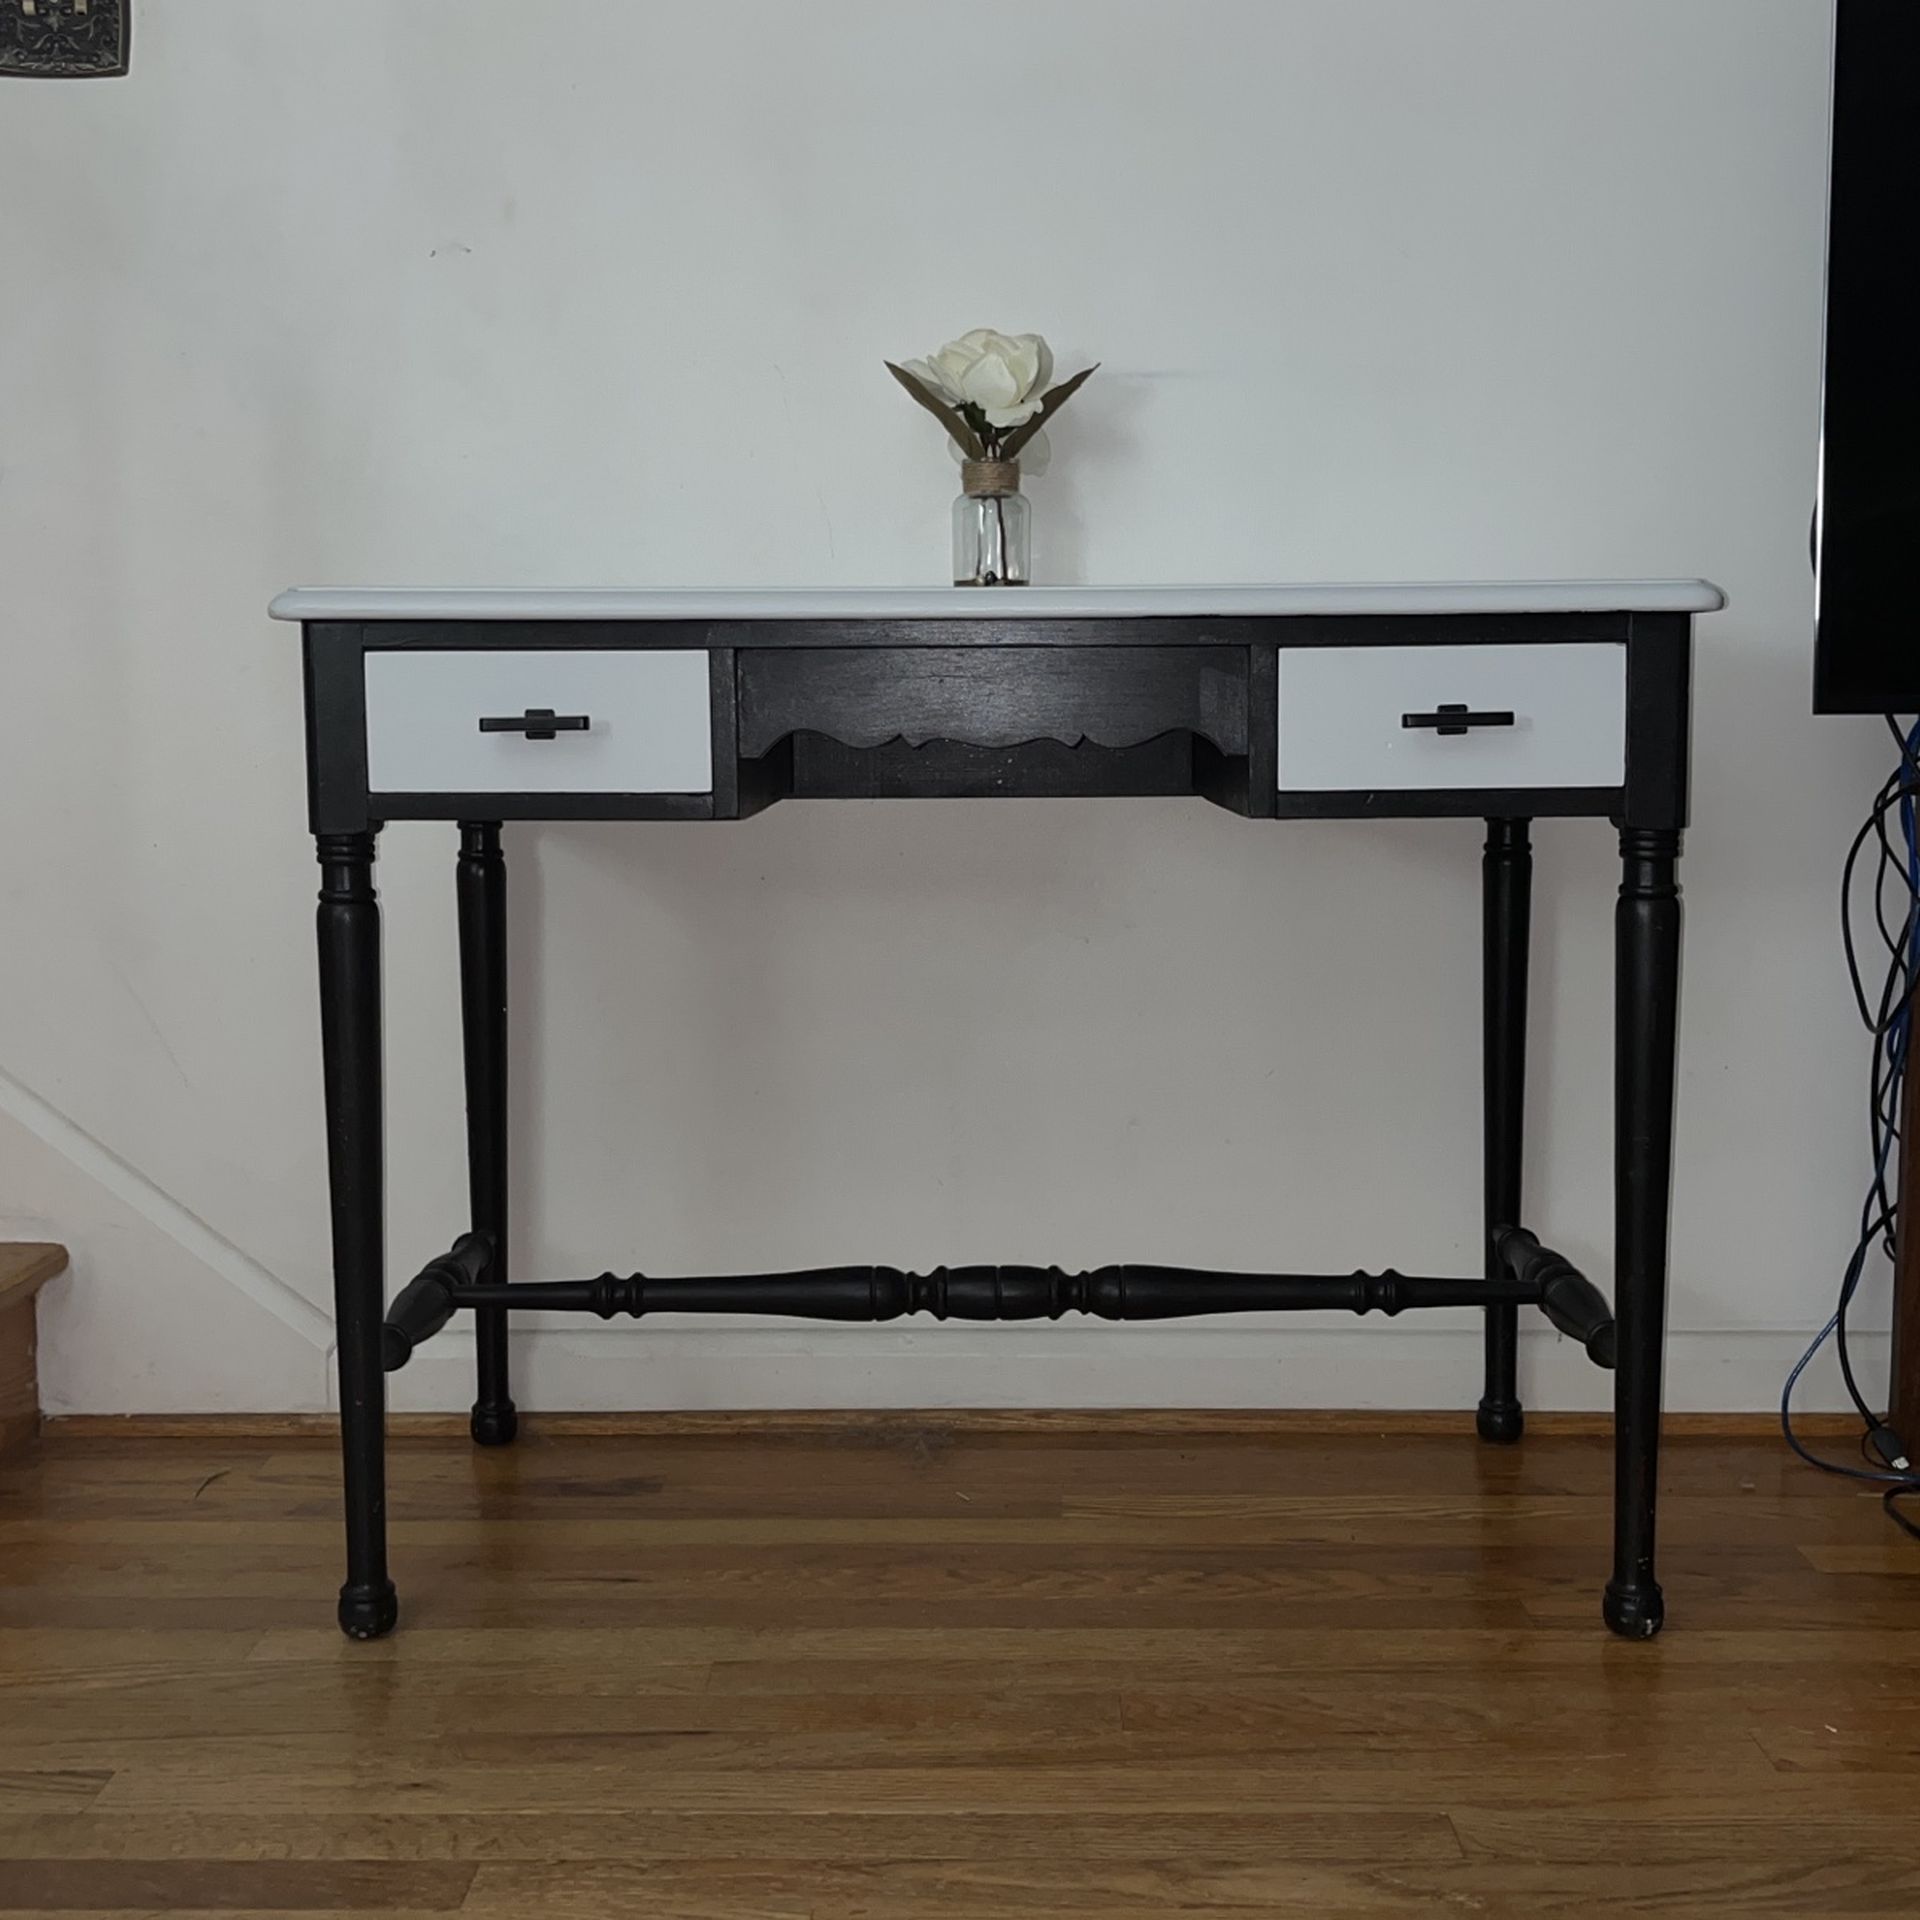 Homemade Desk/ Table 